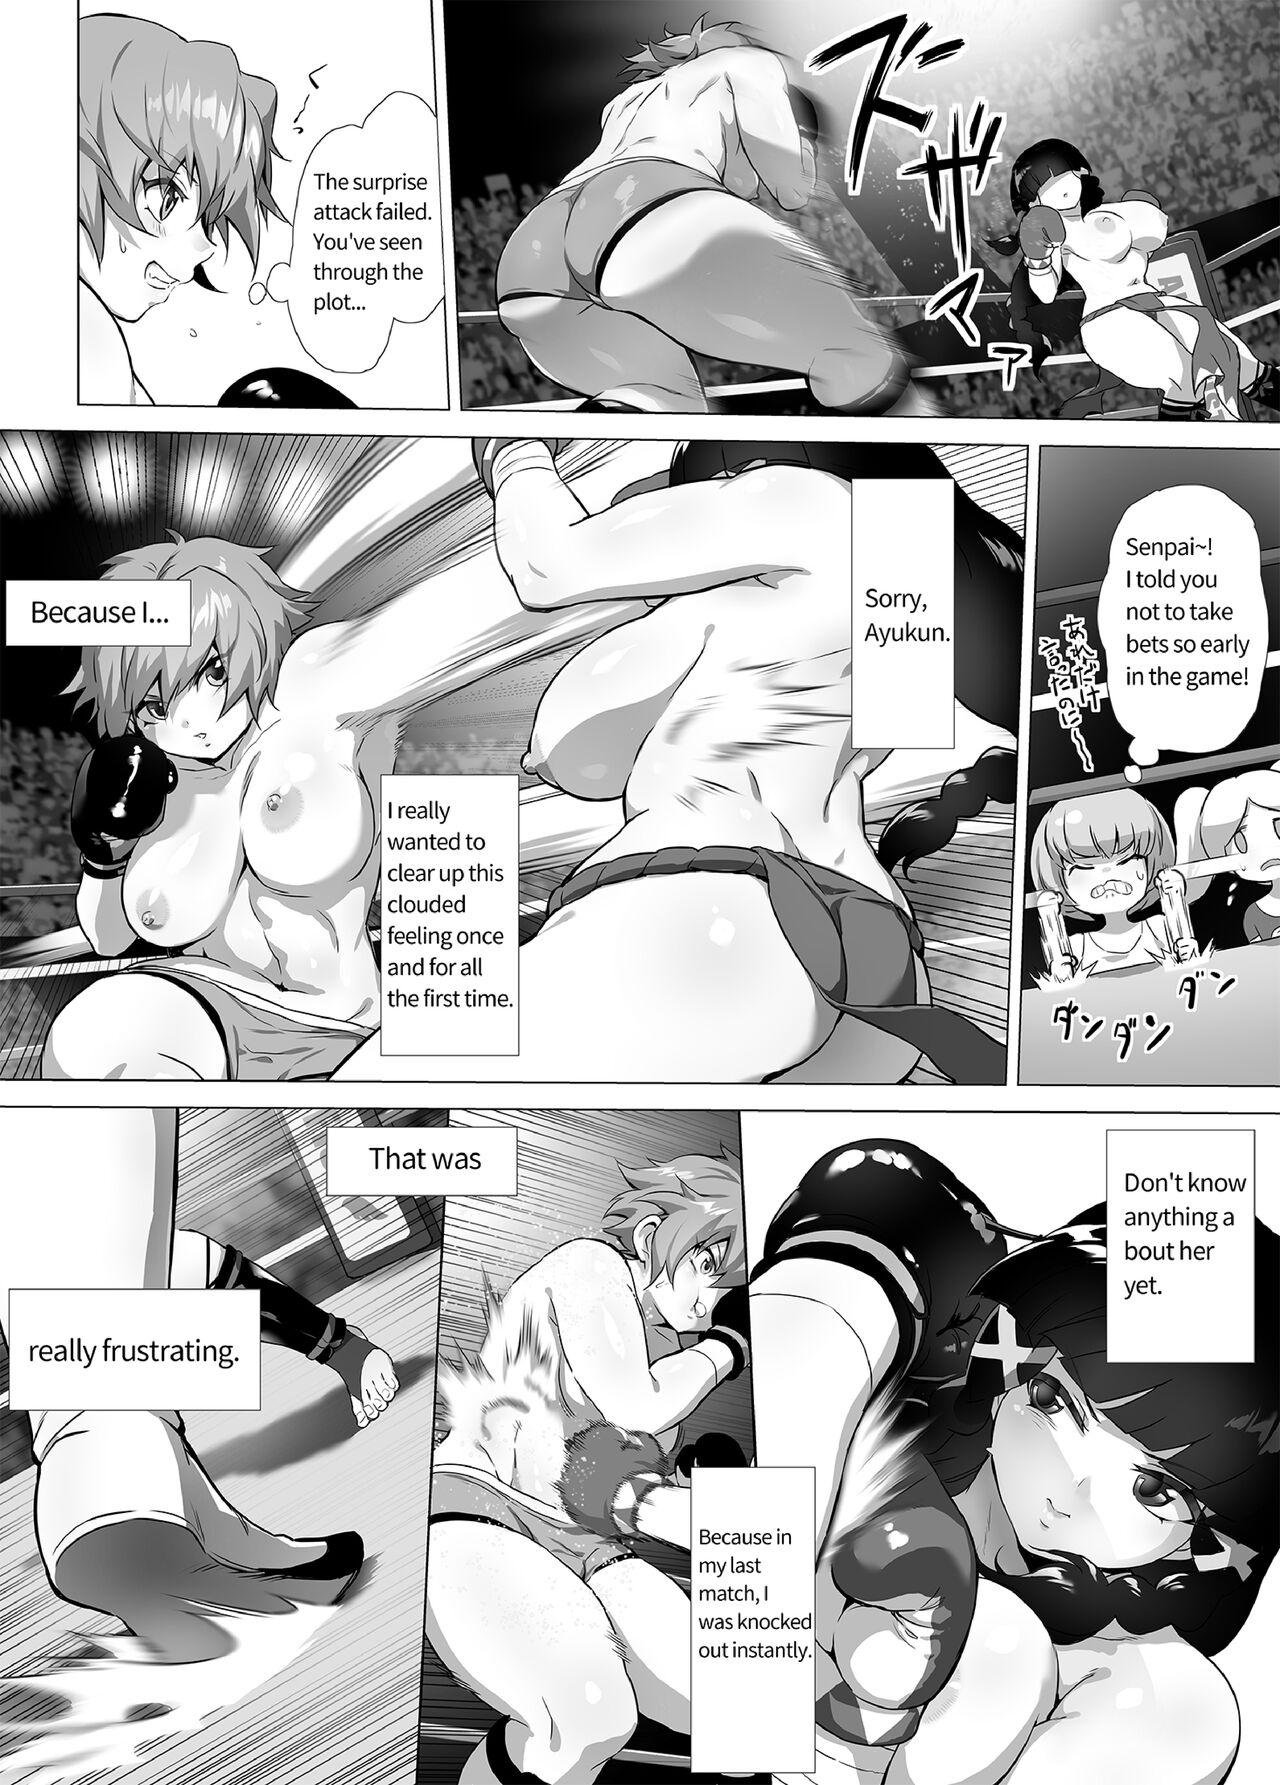 Mahiro STANDUP! Manga Ver. 19